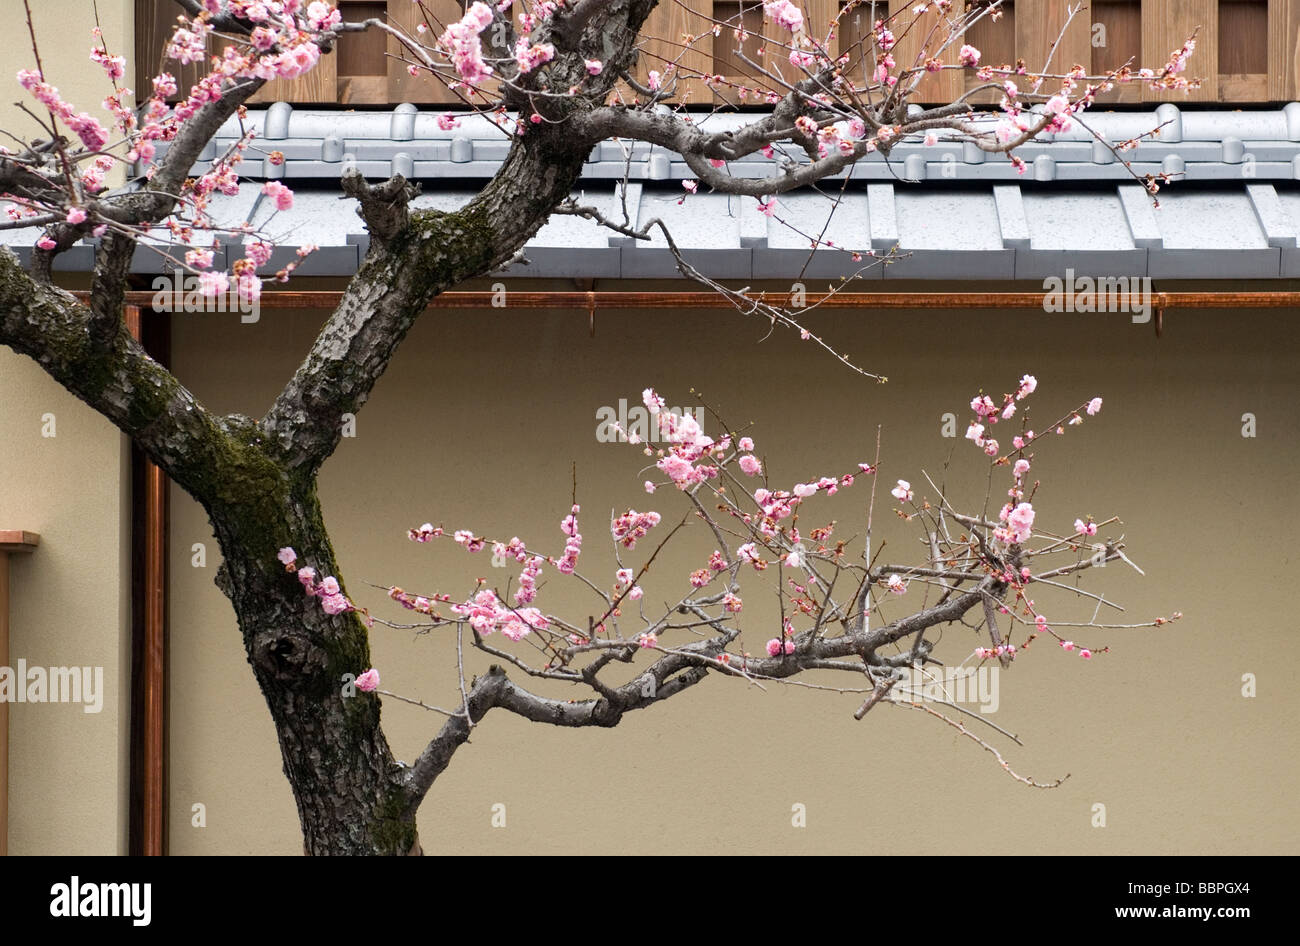 La floraison d'un prunier crée une délicate composition artistique contre l'arrière-plan d'un bâtiment de style japonais à Kyoto Banque D'Images